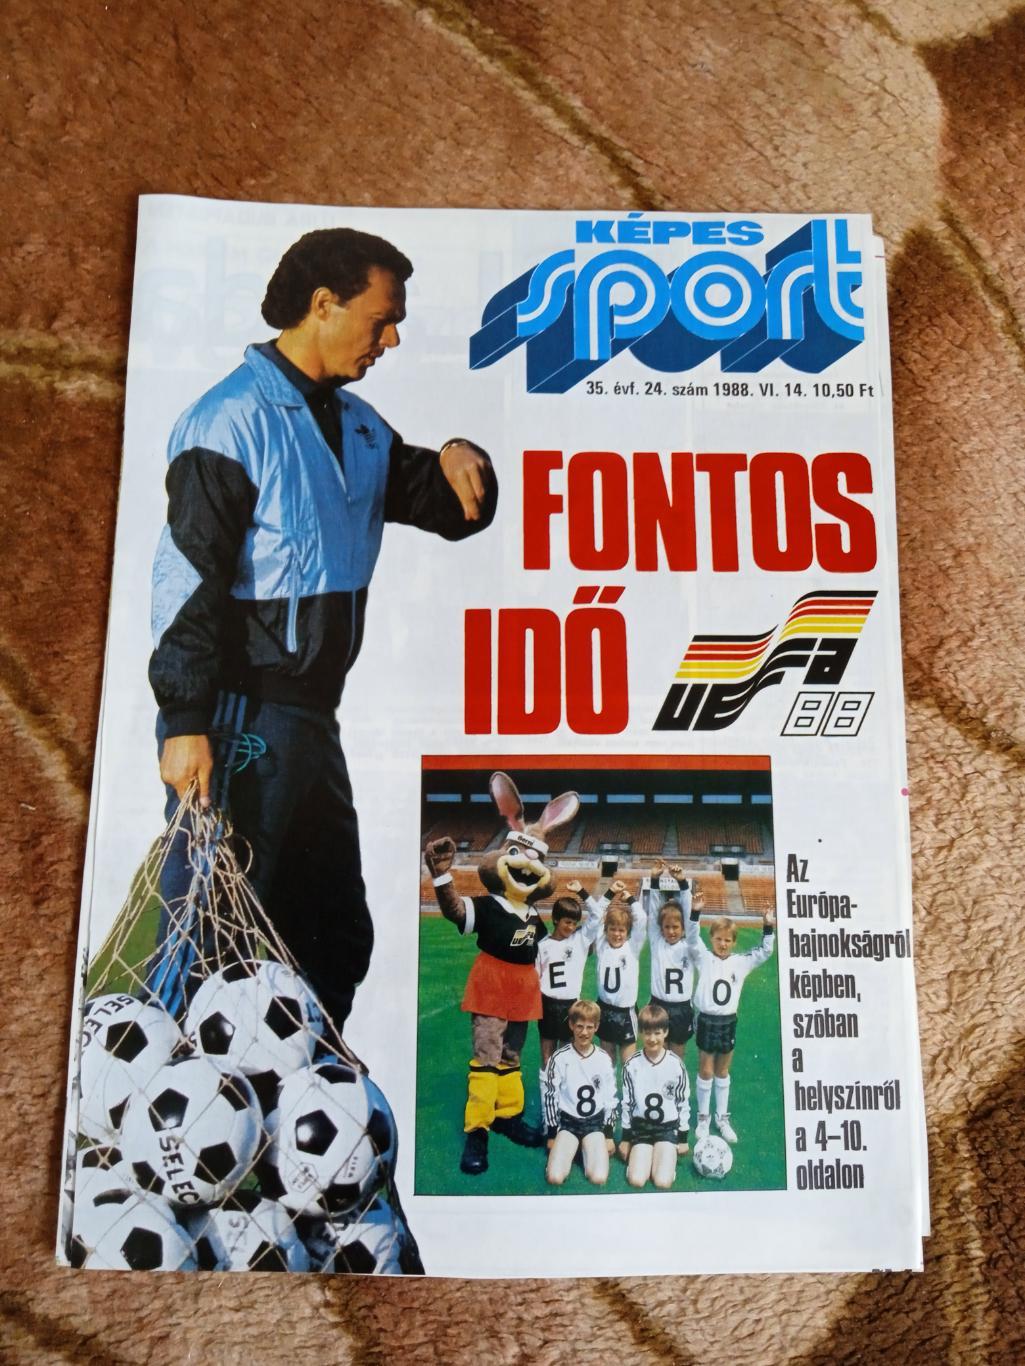 Статья.Футбол.Чемпионат Европы 1988.ФРГ.Журнал Кепеш спорт (Венгрия) 1988.